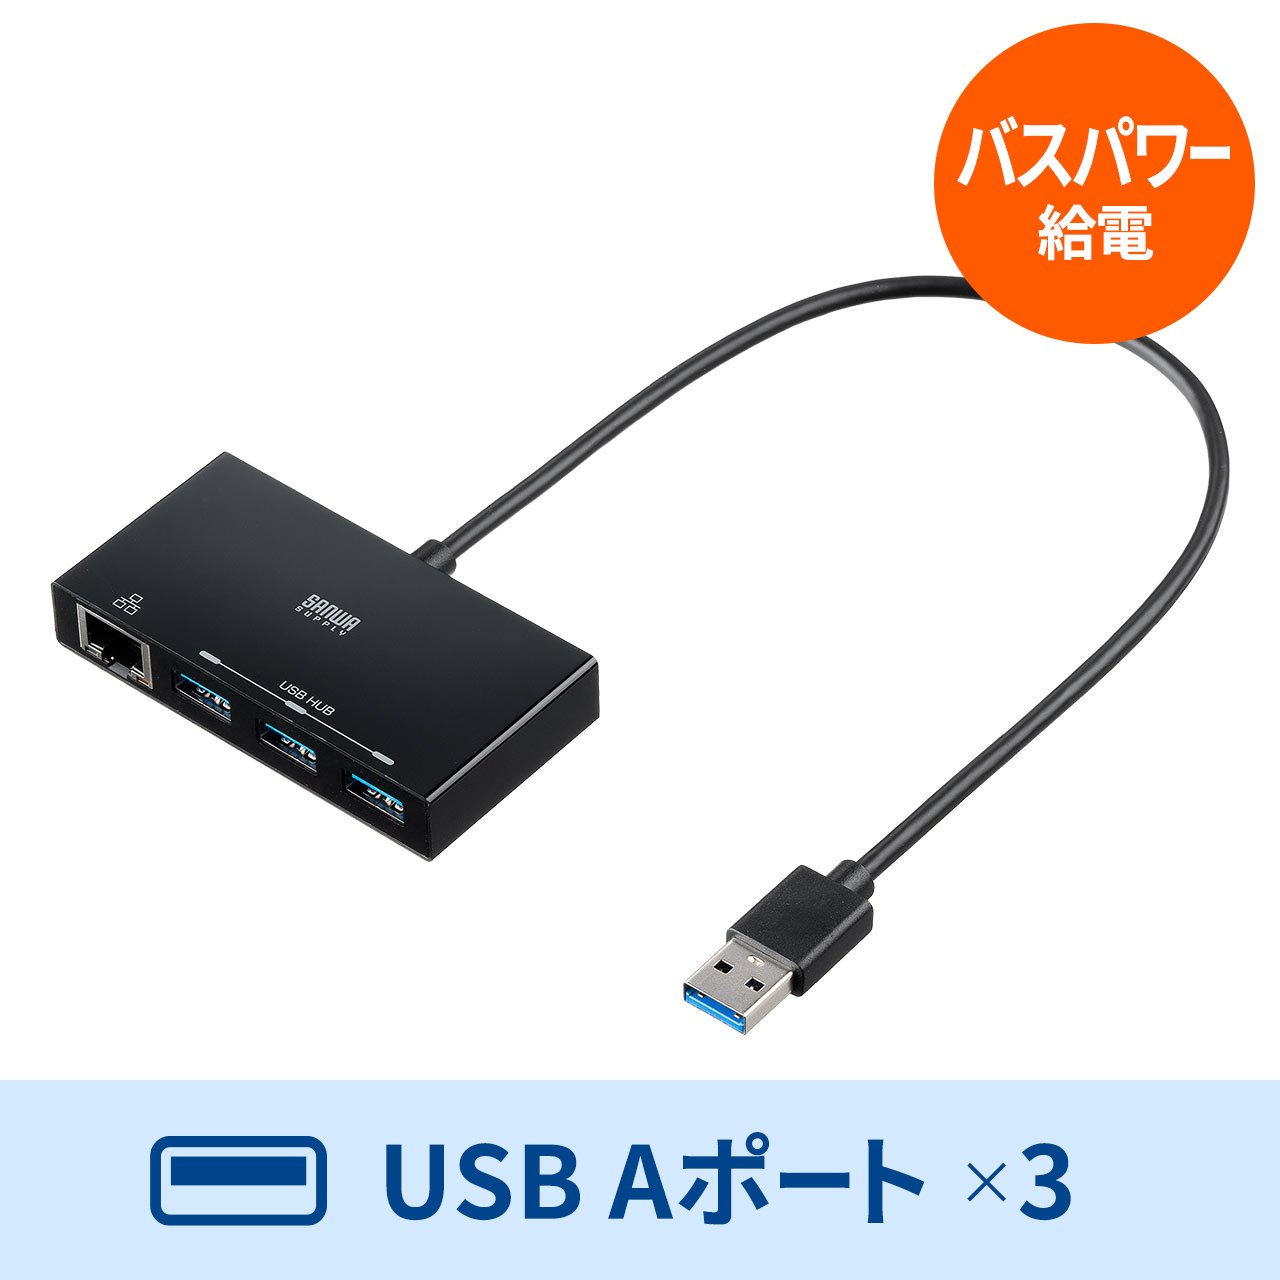 USBハブ USB3.2 LANポート付き 有線LAN対応 ギガビットイーサネット 1Gbps対応 USBハブ3ポート ケーブル長30cm 面 ファスナー付 400-HUBA3BKの販売商品 通販ならサンワダイレクト